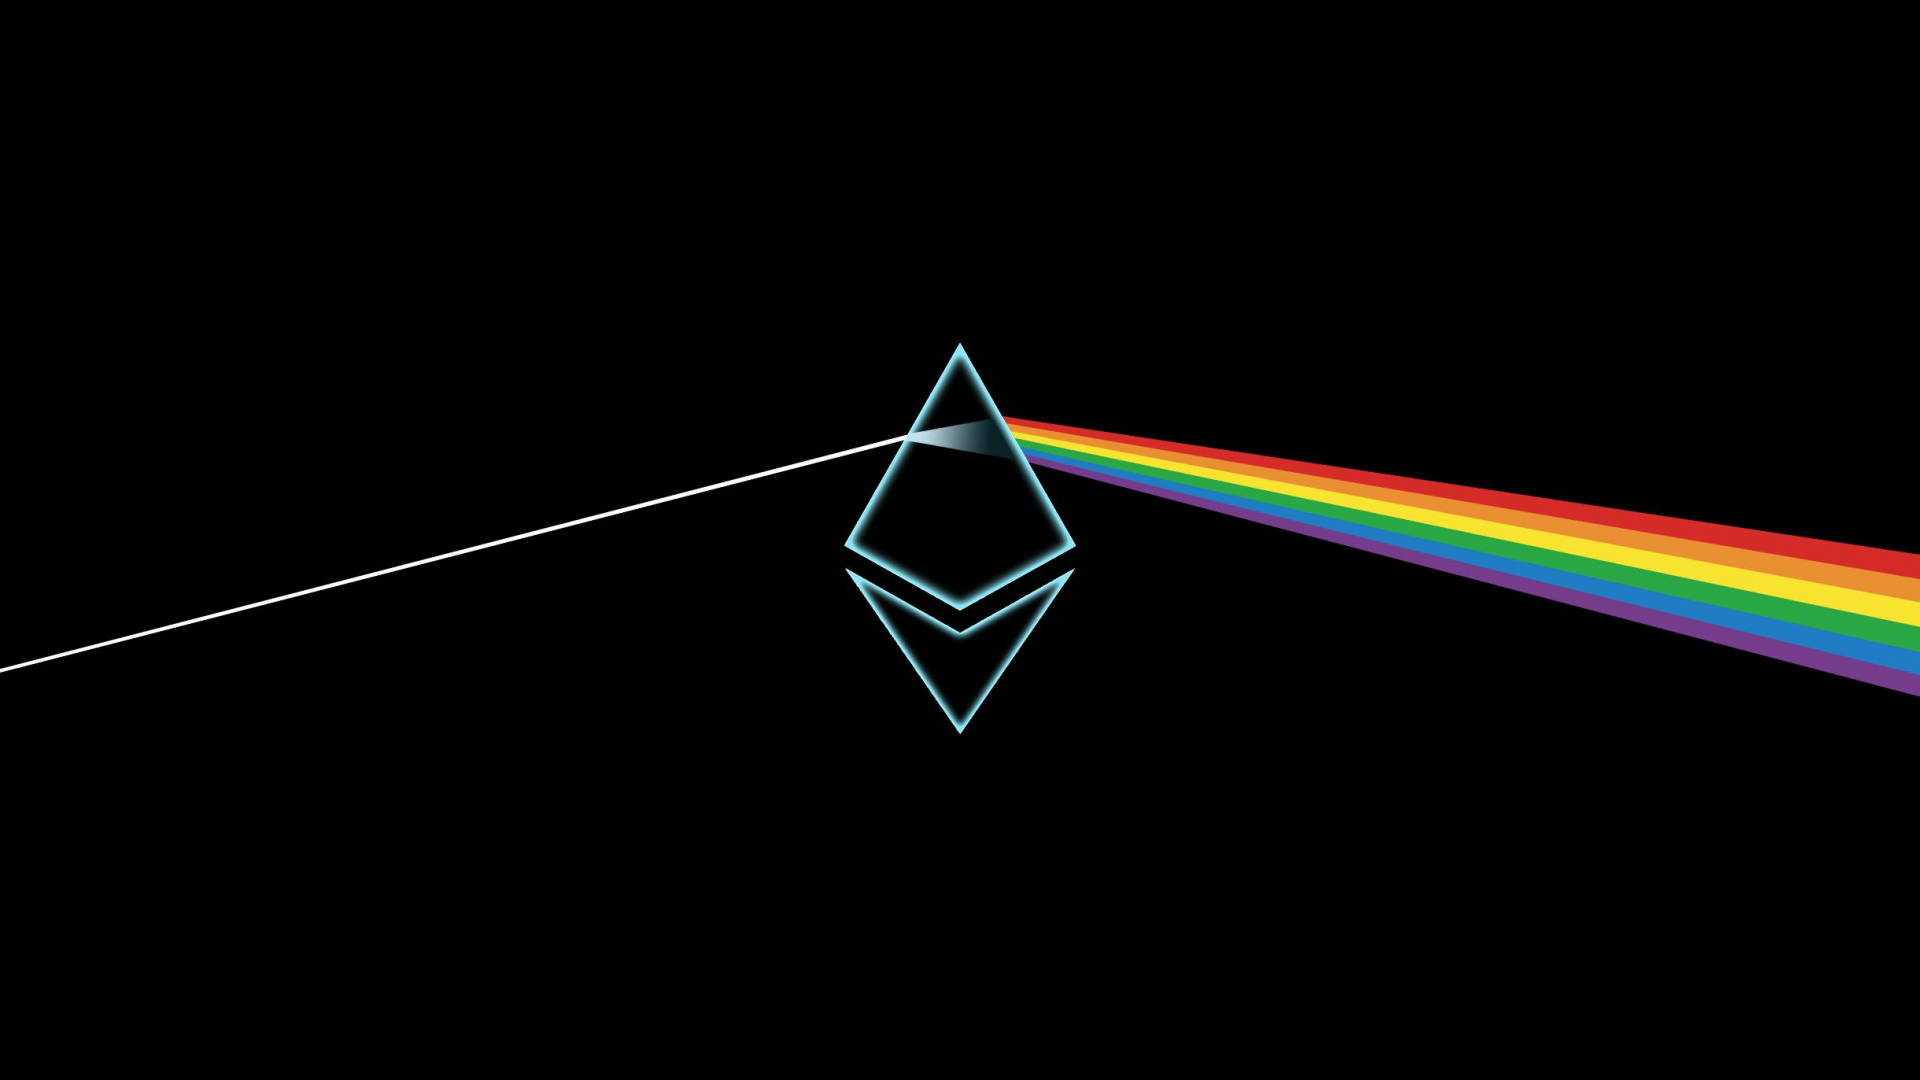 Ethereuminspirado No Pink Floyd Papel de Parede